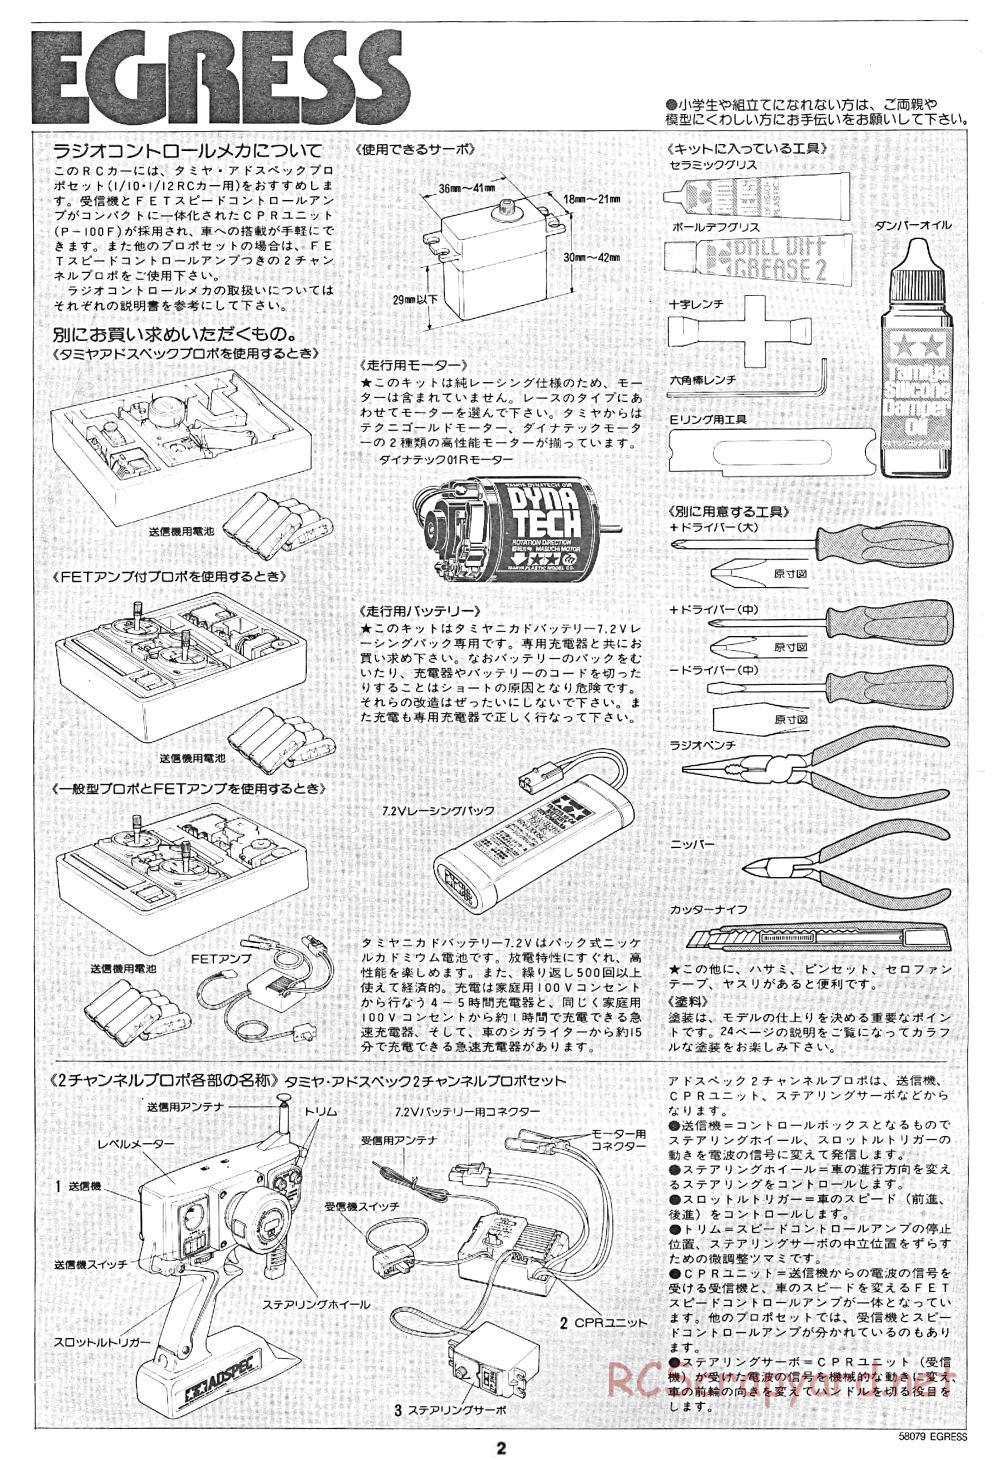 Tamiya - Egress - 58079 - Manual - Page 2